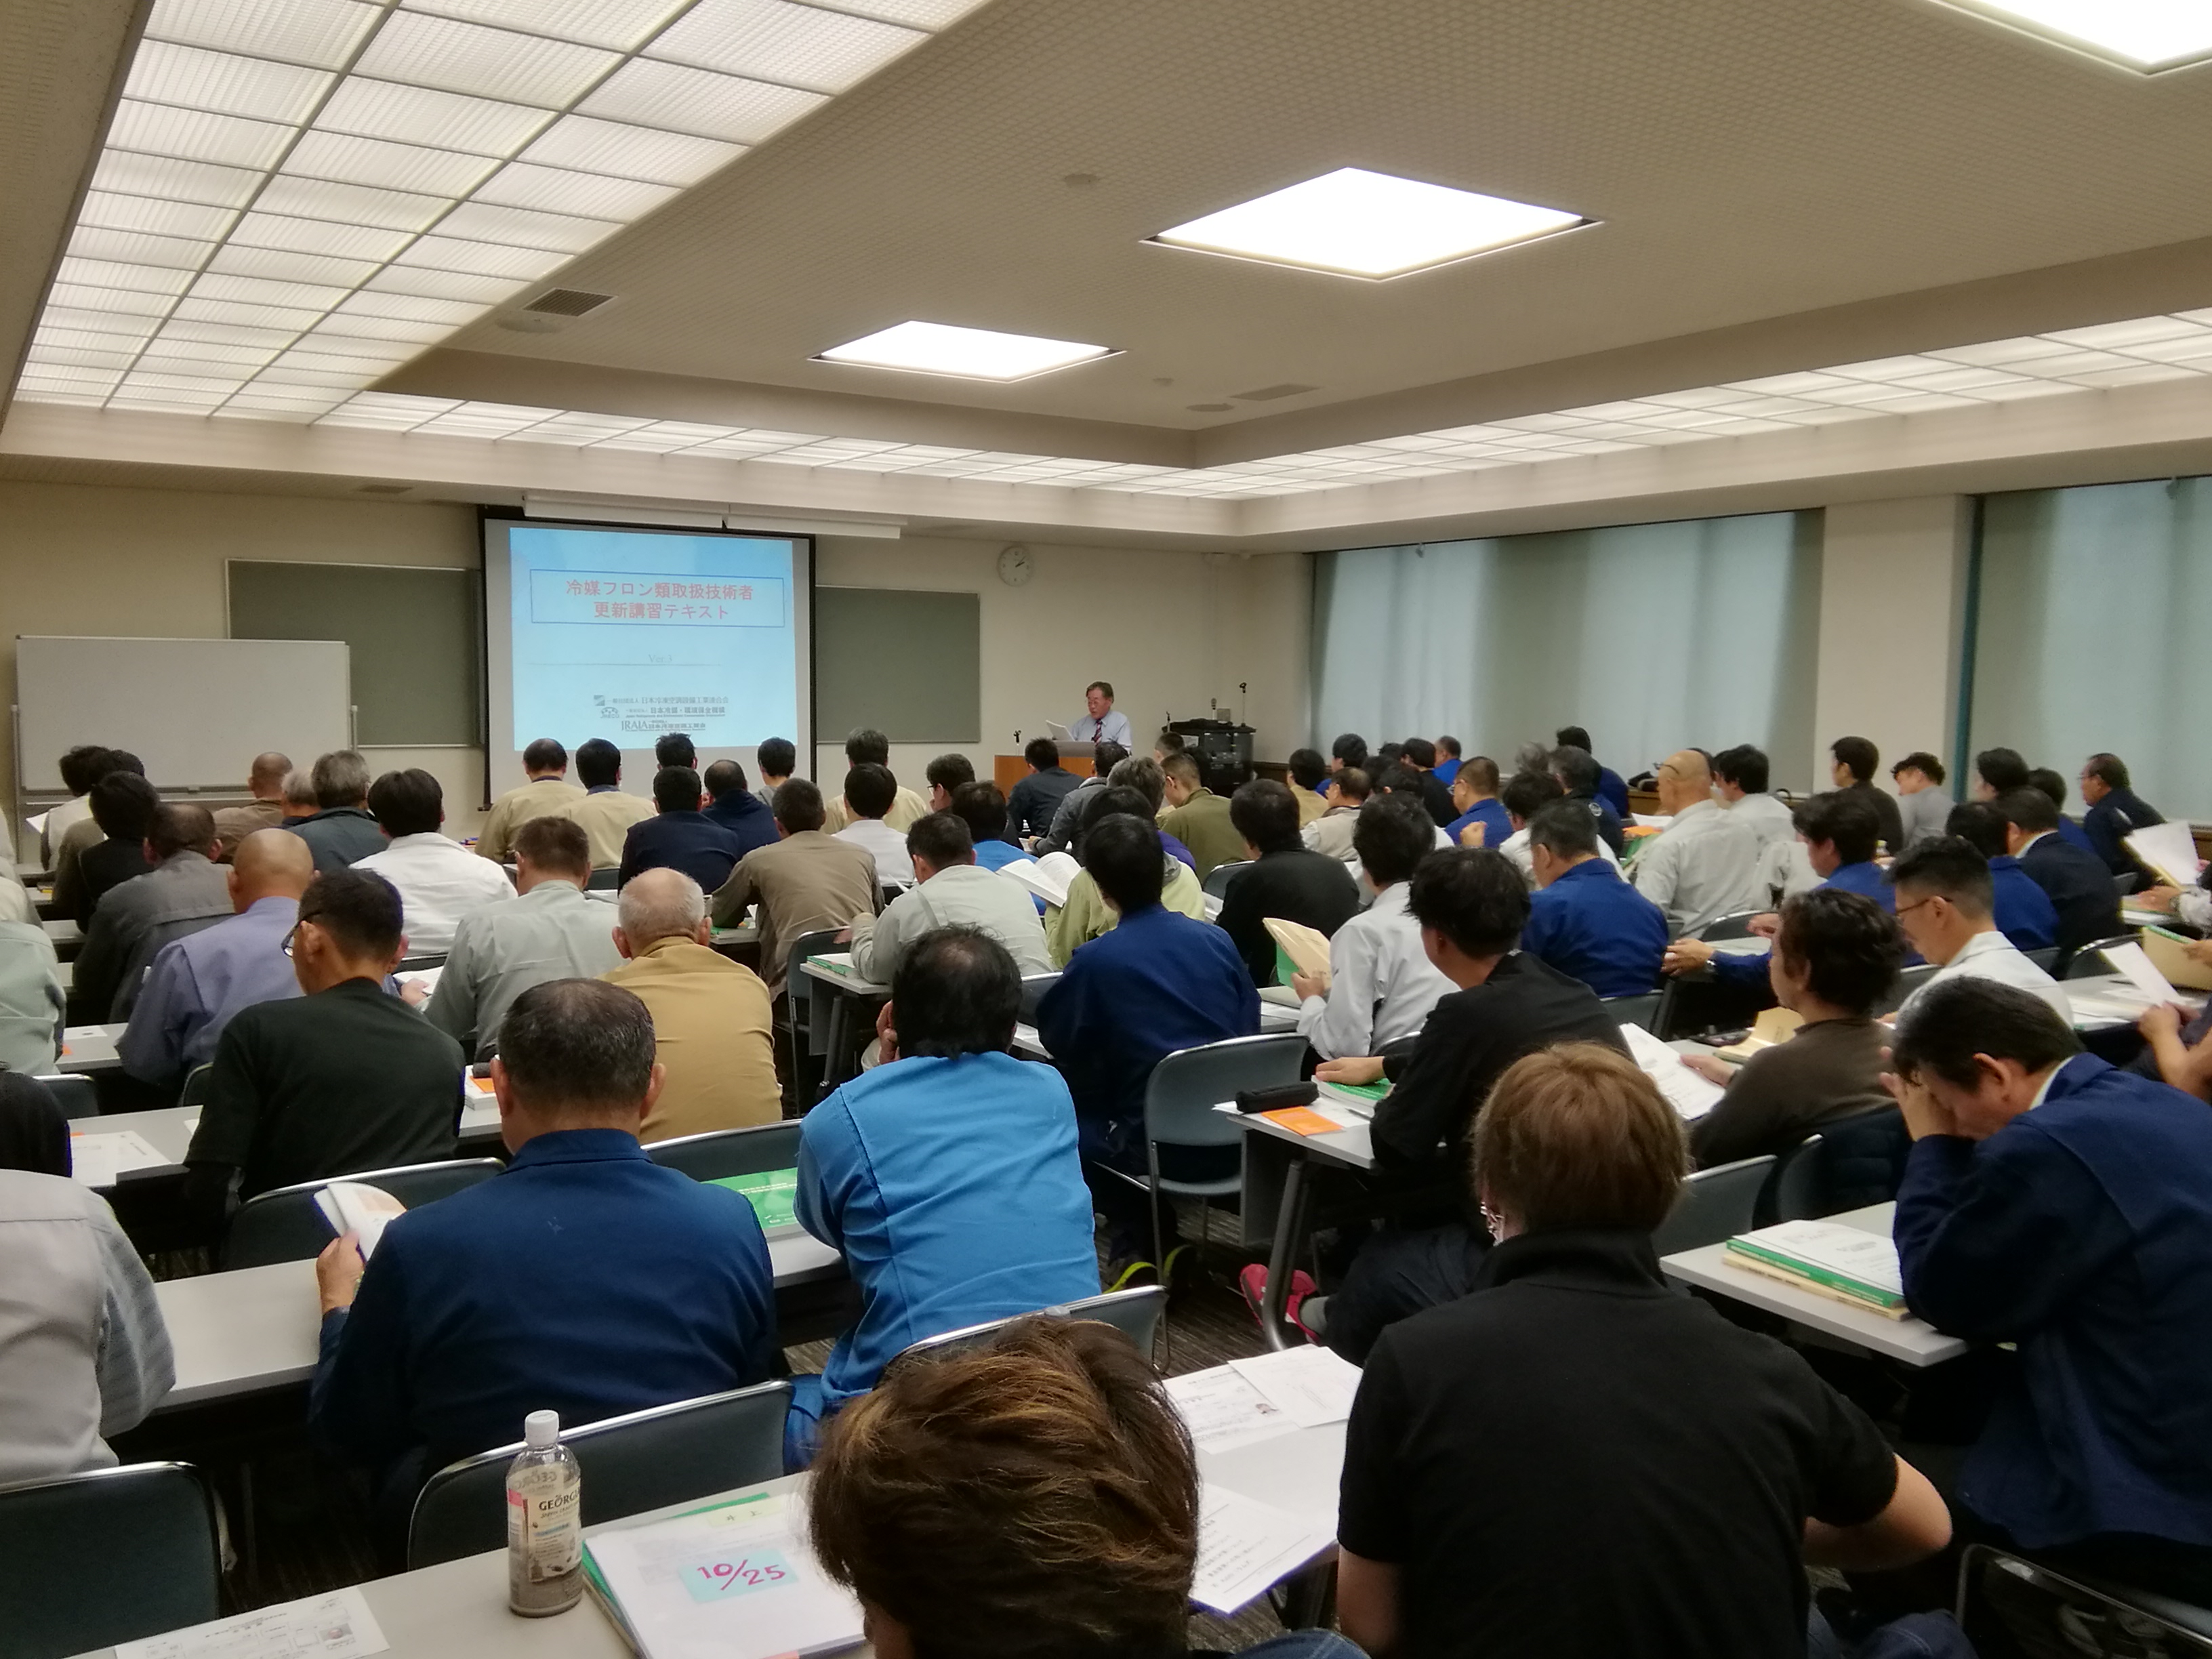 冷媒フロン類取扱技術者更新講習会が開催されました 石川県冷凍空調設備工業会 石川県冷凍空調設備工業会